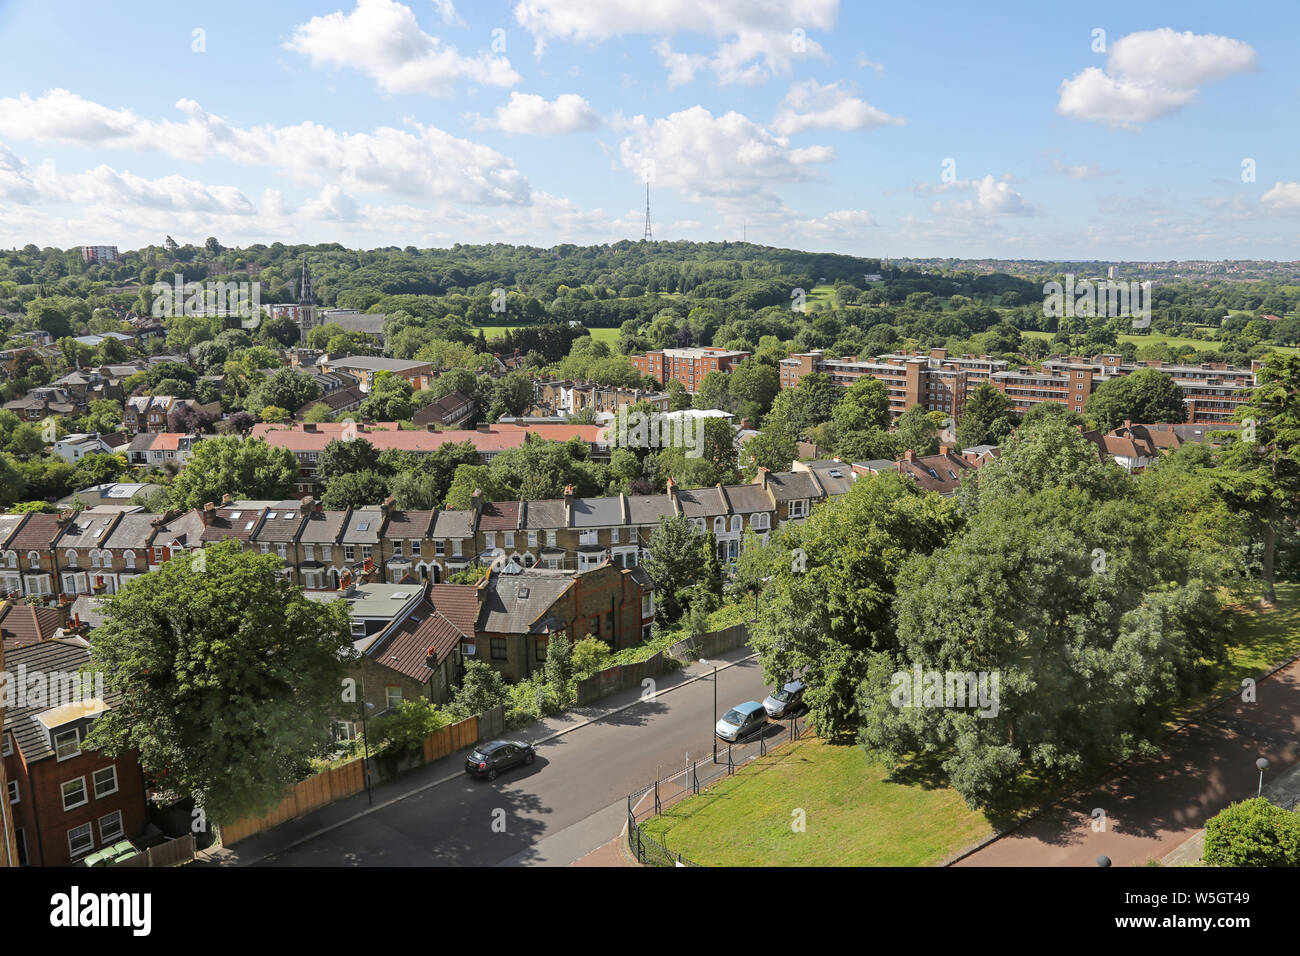 Hoher Blick auf den Südosten Londons - Blick nach Süden in Richtung Dulwich Golfplatz, Upper Sydenham und Crystal Palace. Zeigt viele Bäume und Grünflächen. Stockfoto